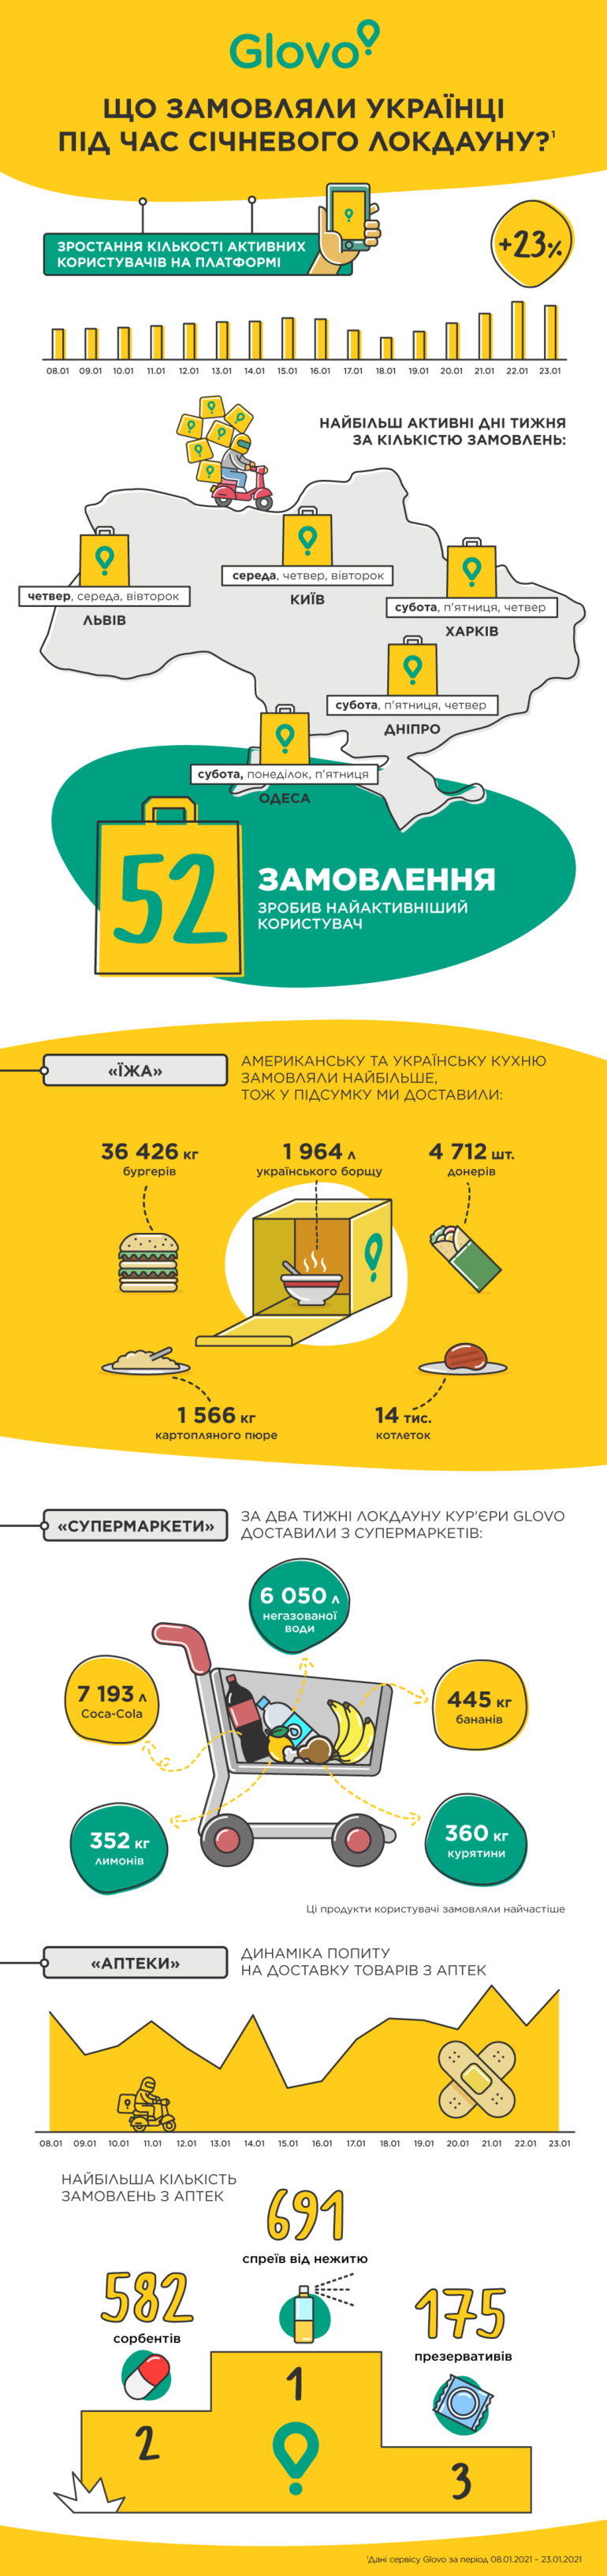 Glovo: Які страви, продукти і товари замовляли українці під час січневого локдауну [інфографіка]